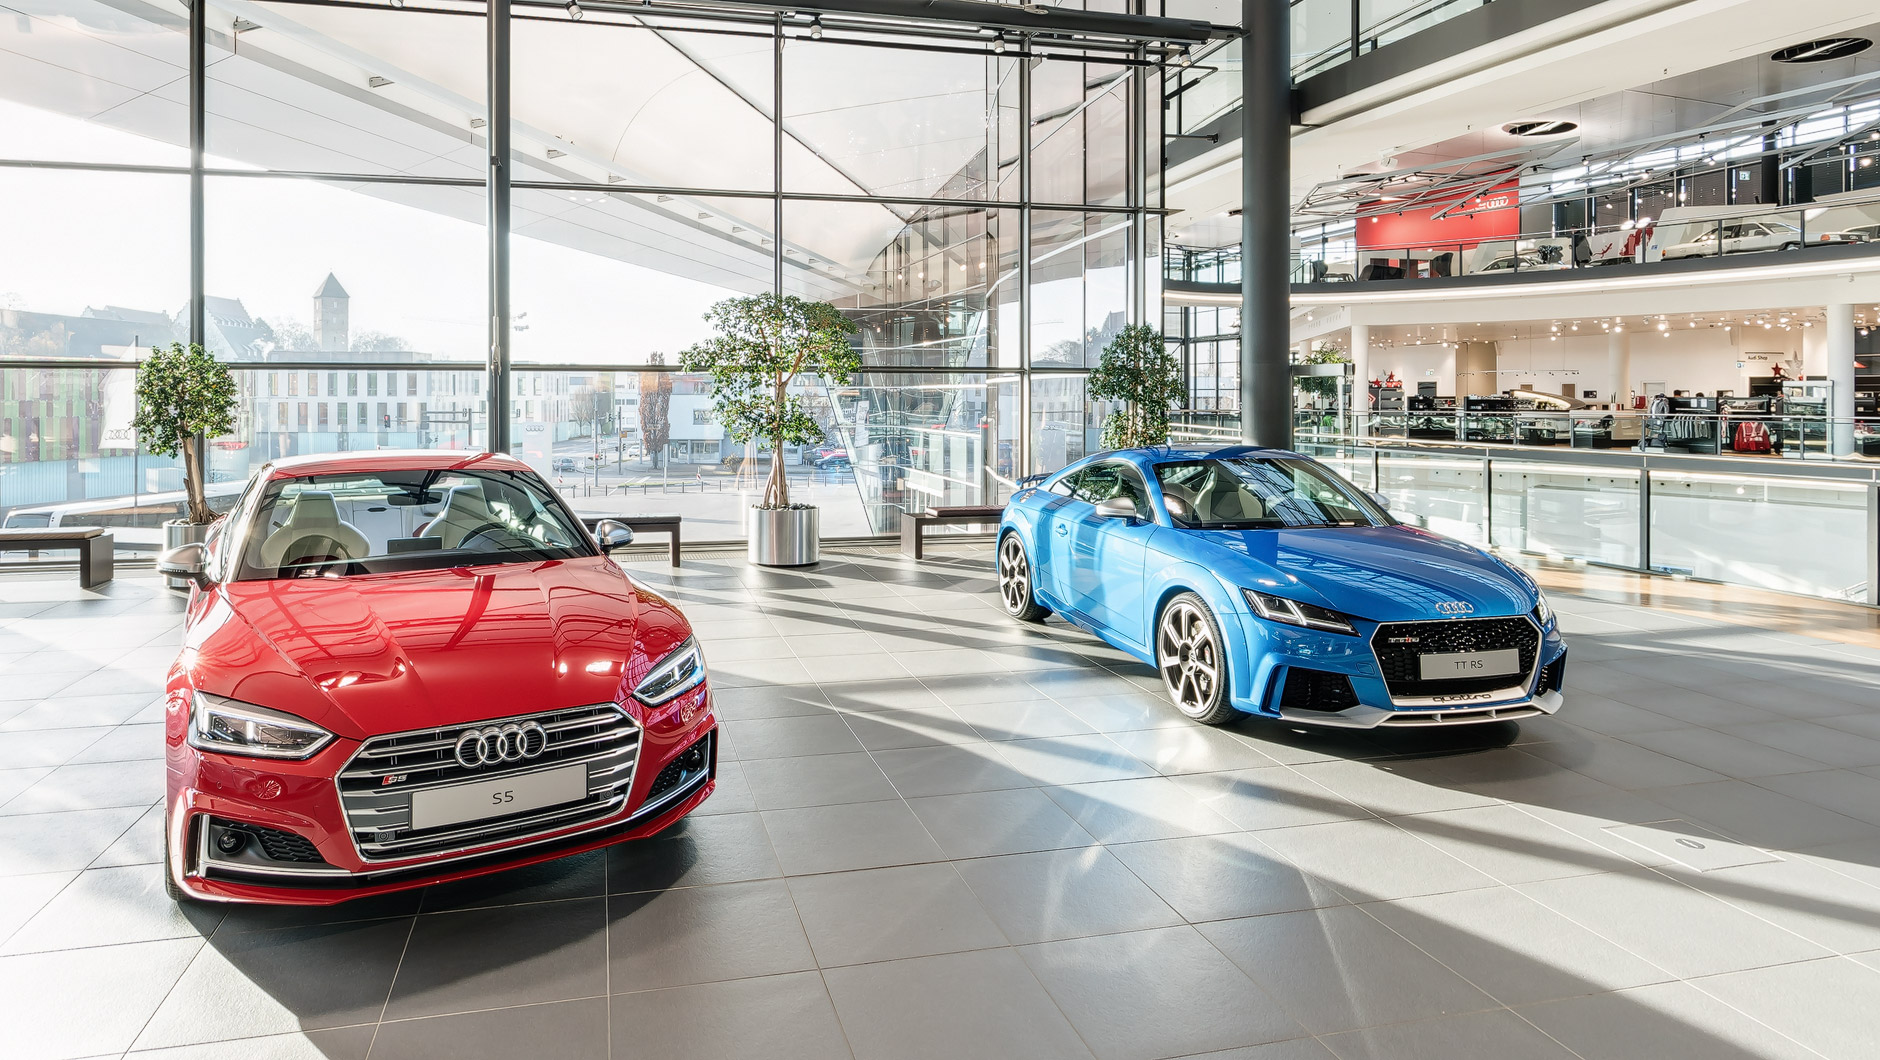 Zwei Audi Modelle im Obergeschoss: ein roter Audi S5 und ein blauer Audi TT RS.